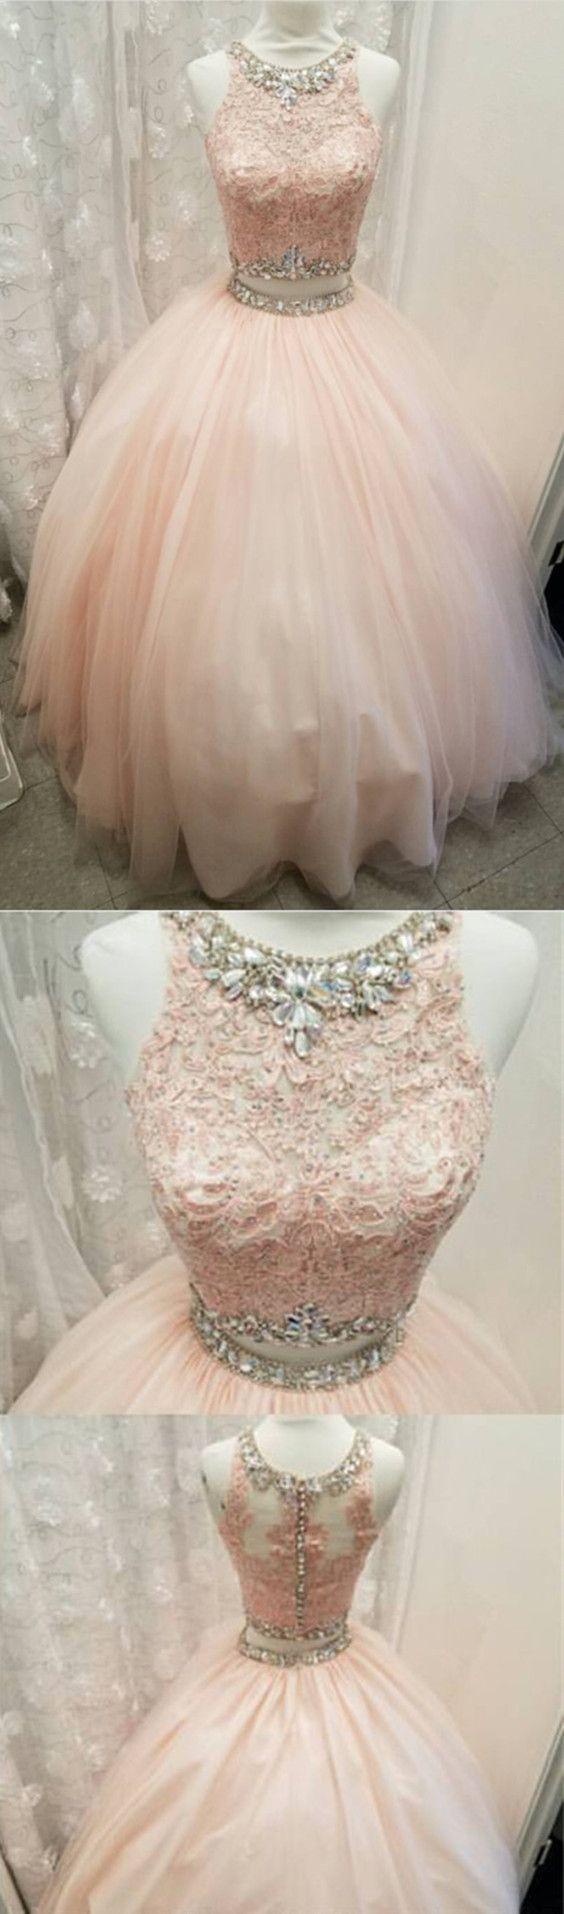 زفاف - Crop Top Dress